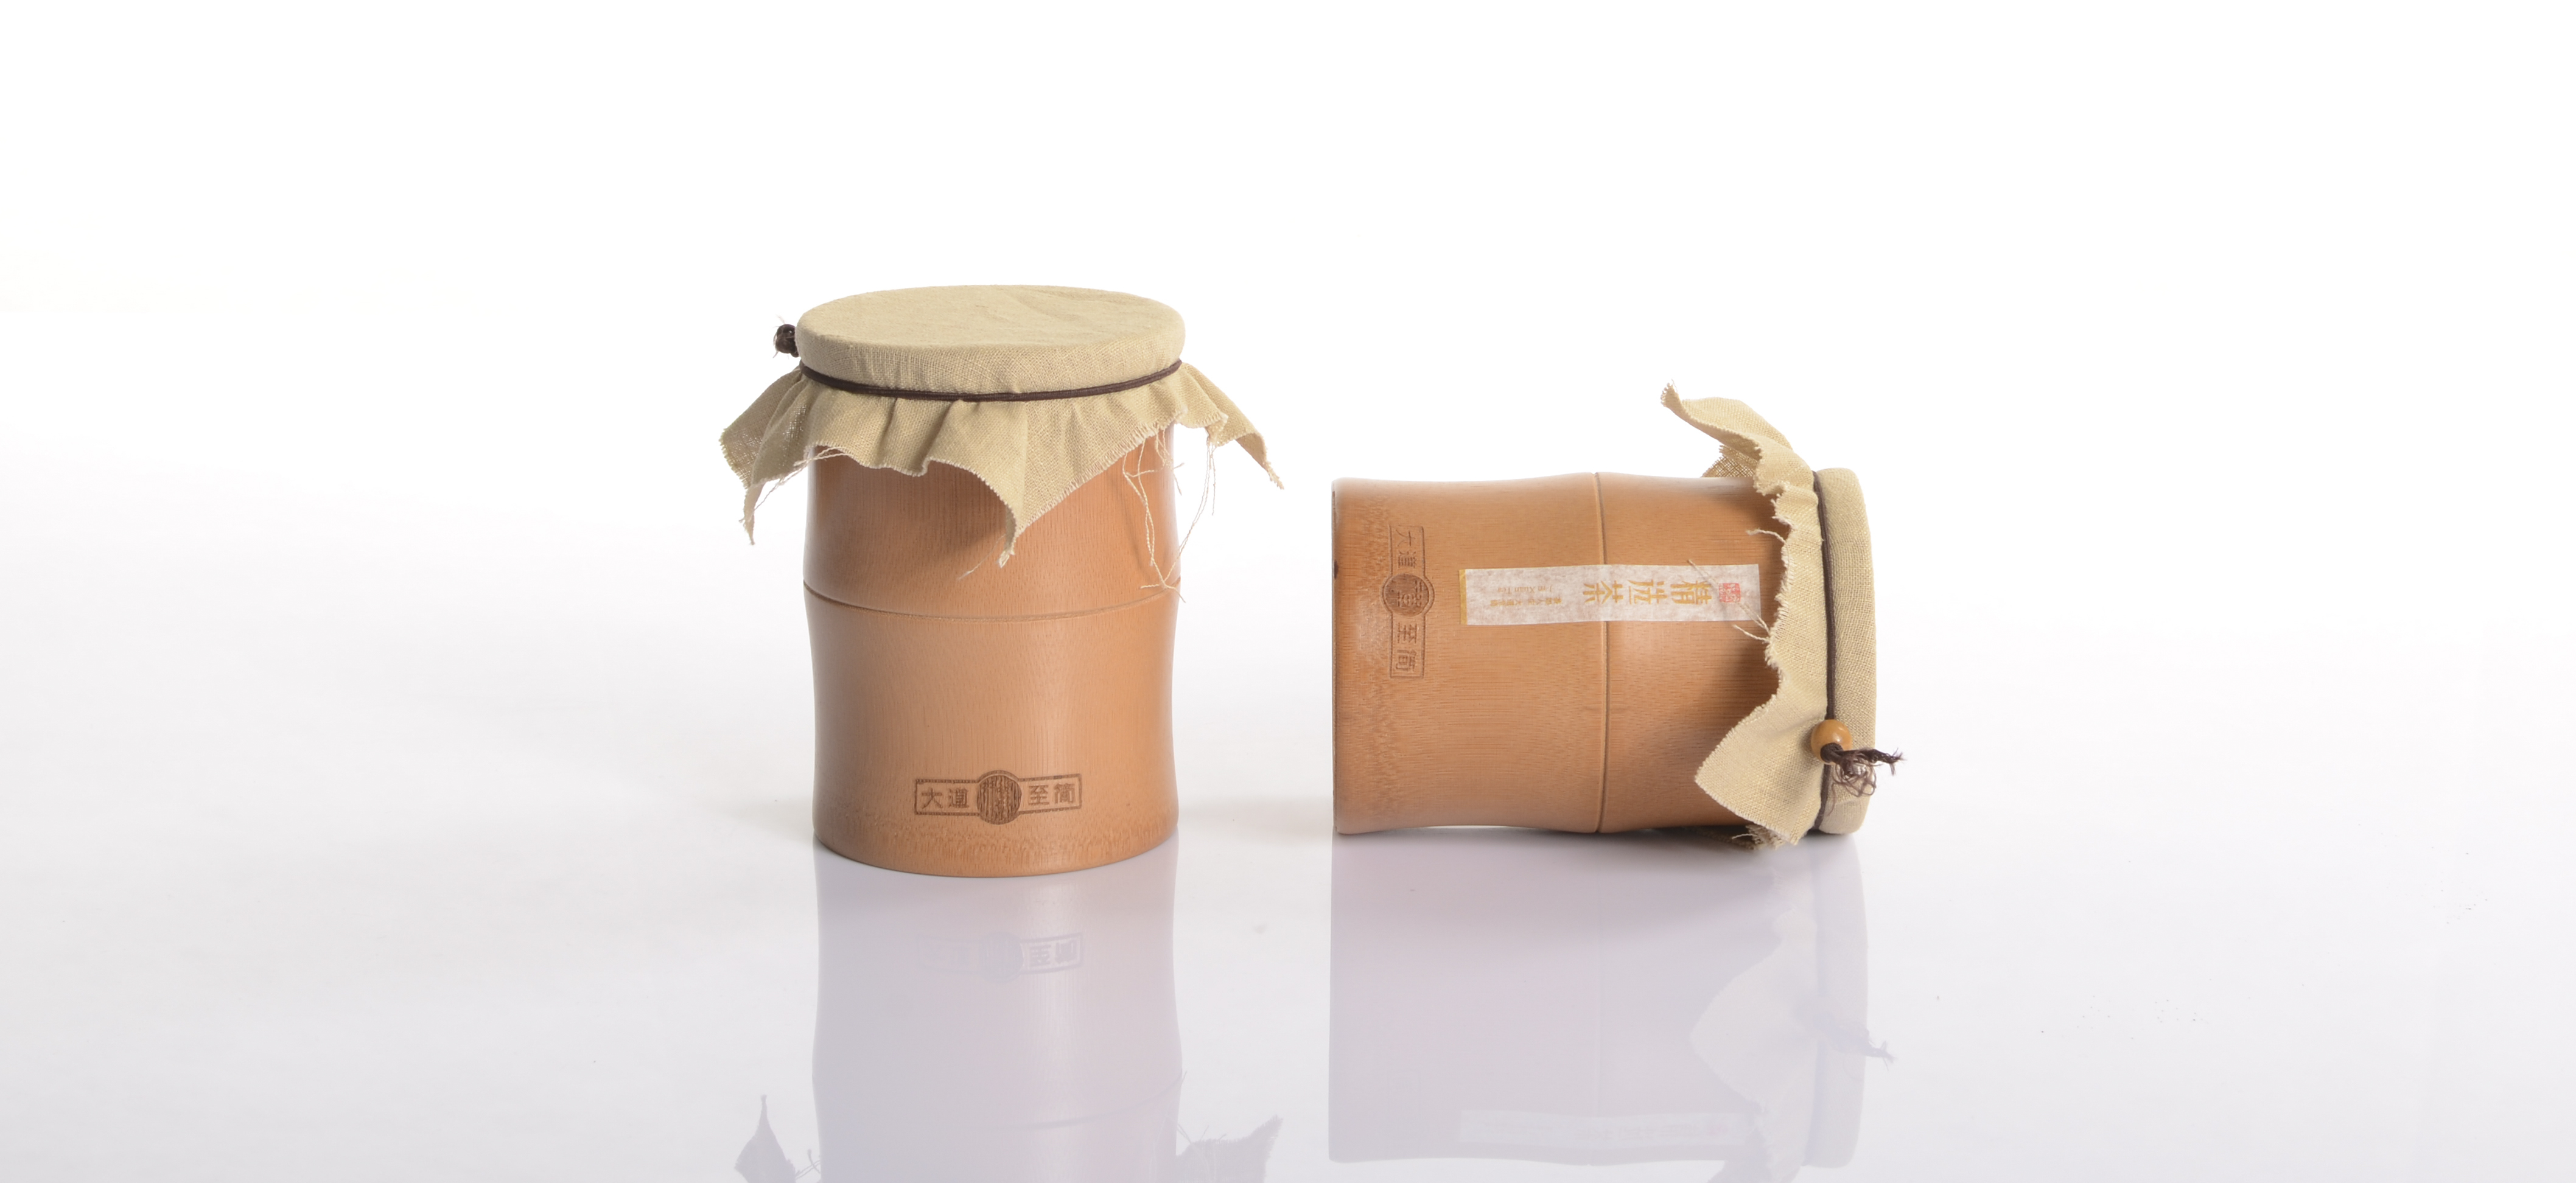 供应用于的大道至简A，2节双个装包装盒竹竹筒环保礼盒竹筒散茶叶包装罐茶叶罐原竹